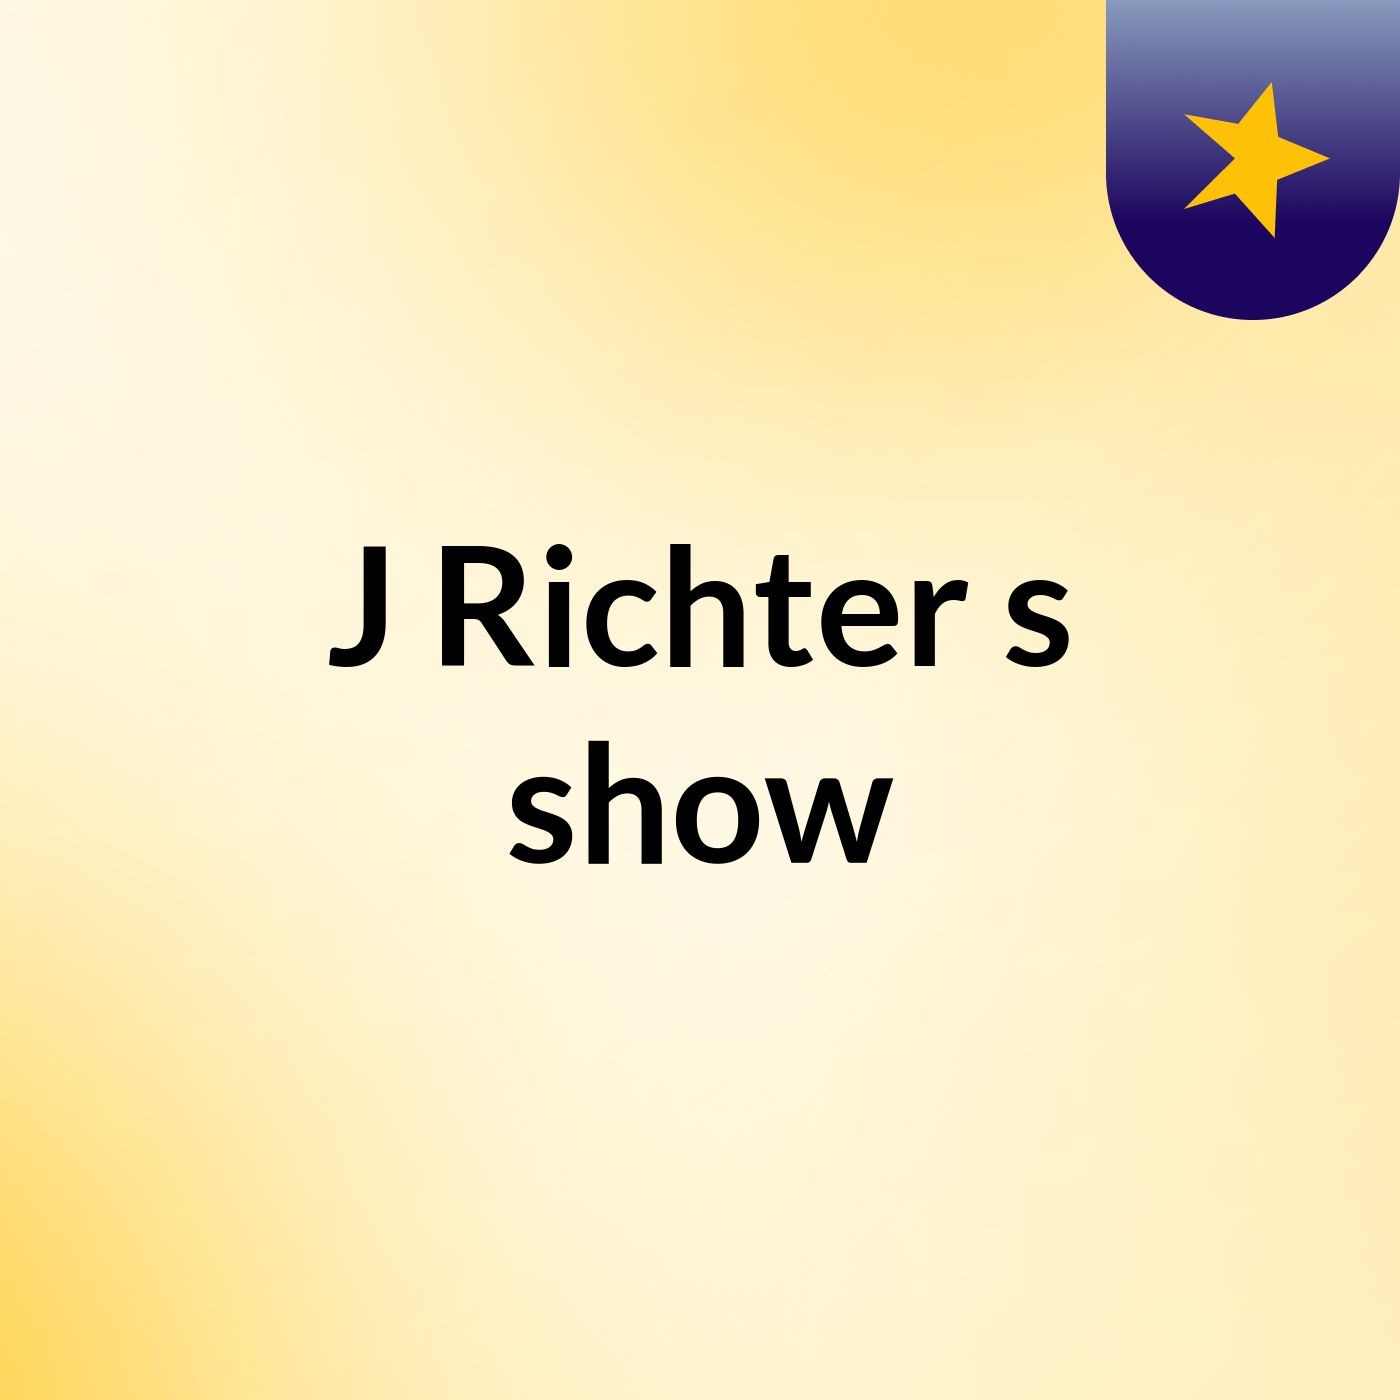 J Richter's show